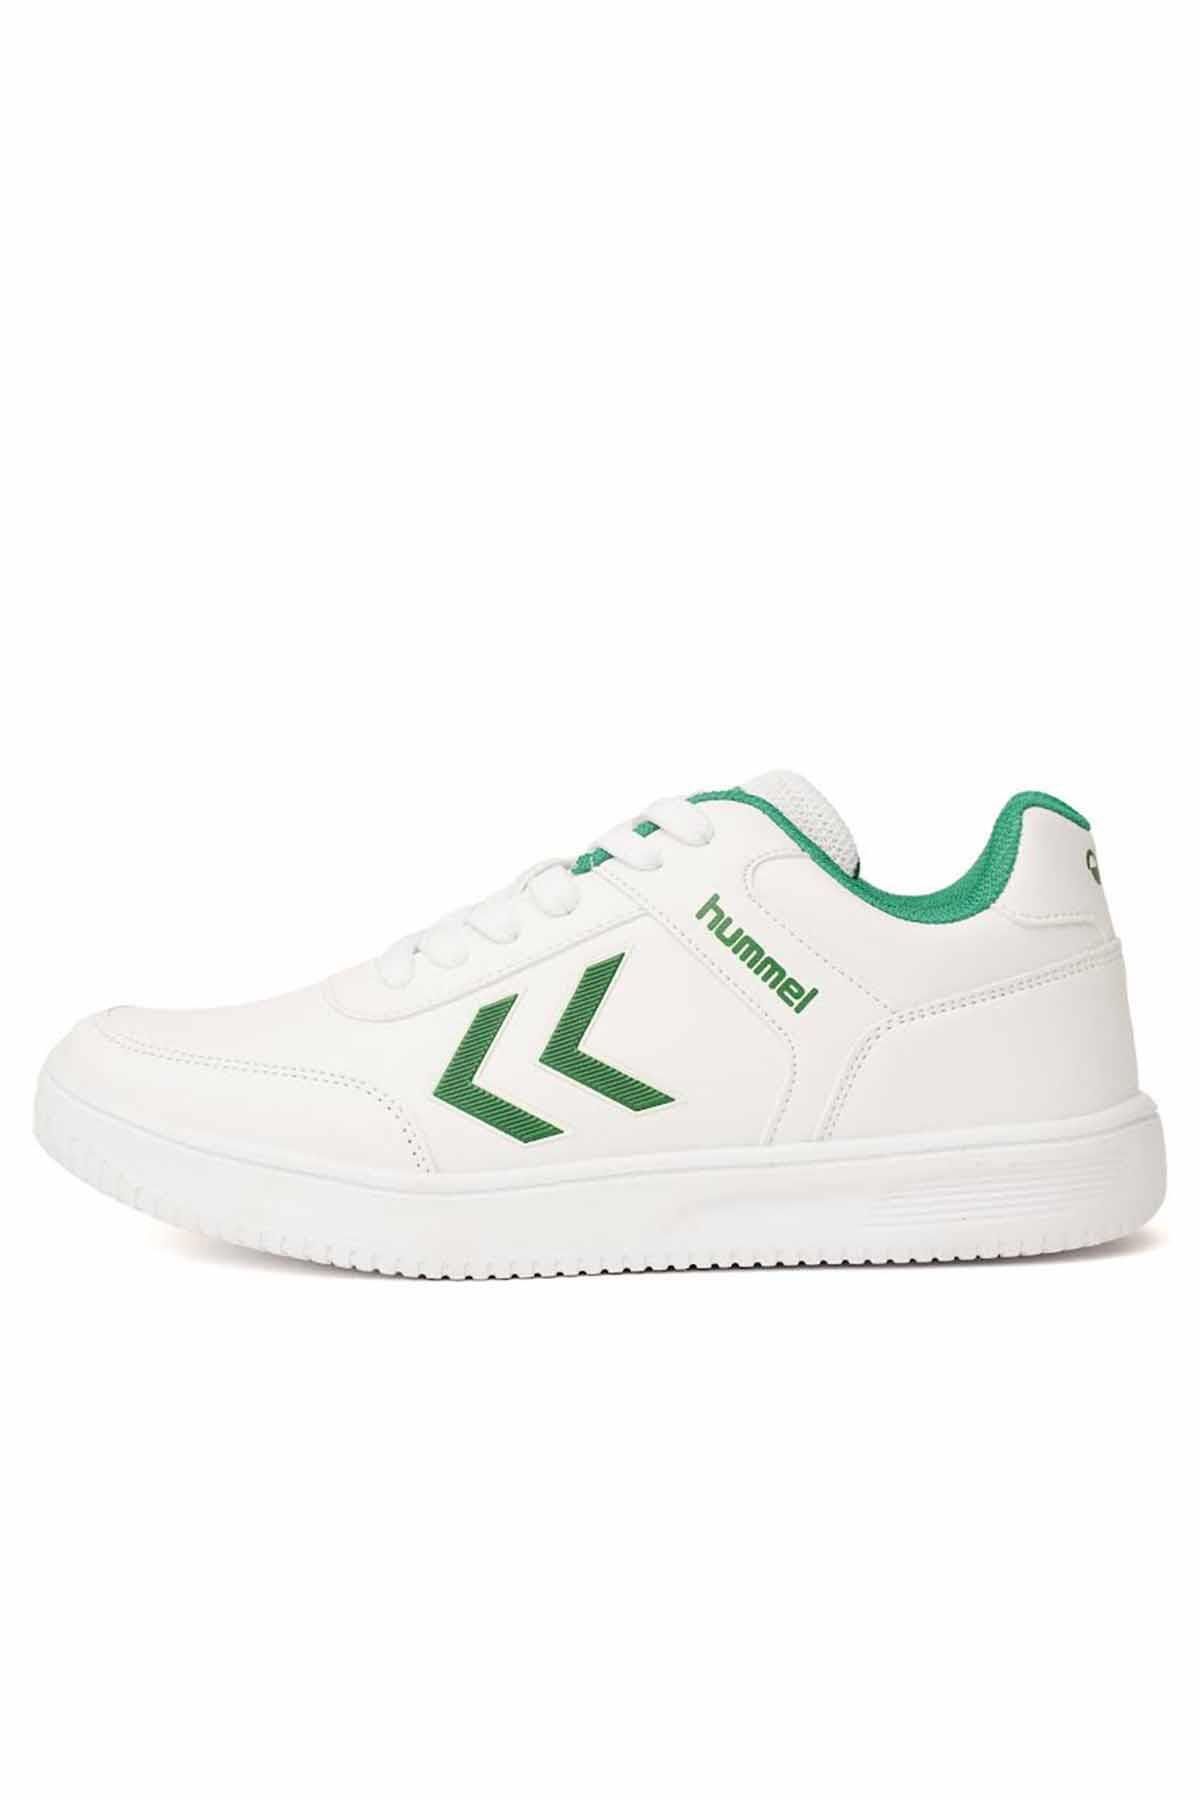 hummel Unisex Beyaz-Yeşil  Spor Ayakkabı ACCESS PU Unisex Sneaker Ayakkabı 900325-9208-1WHITE